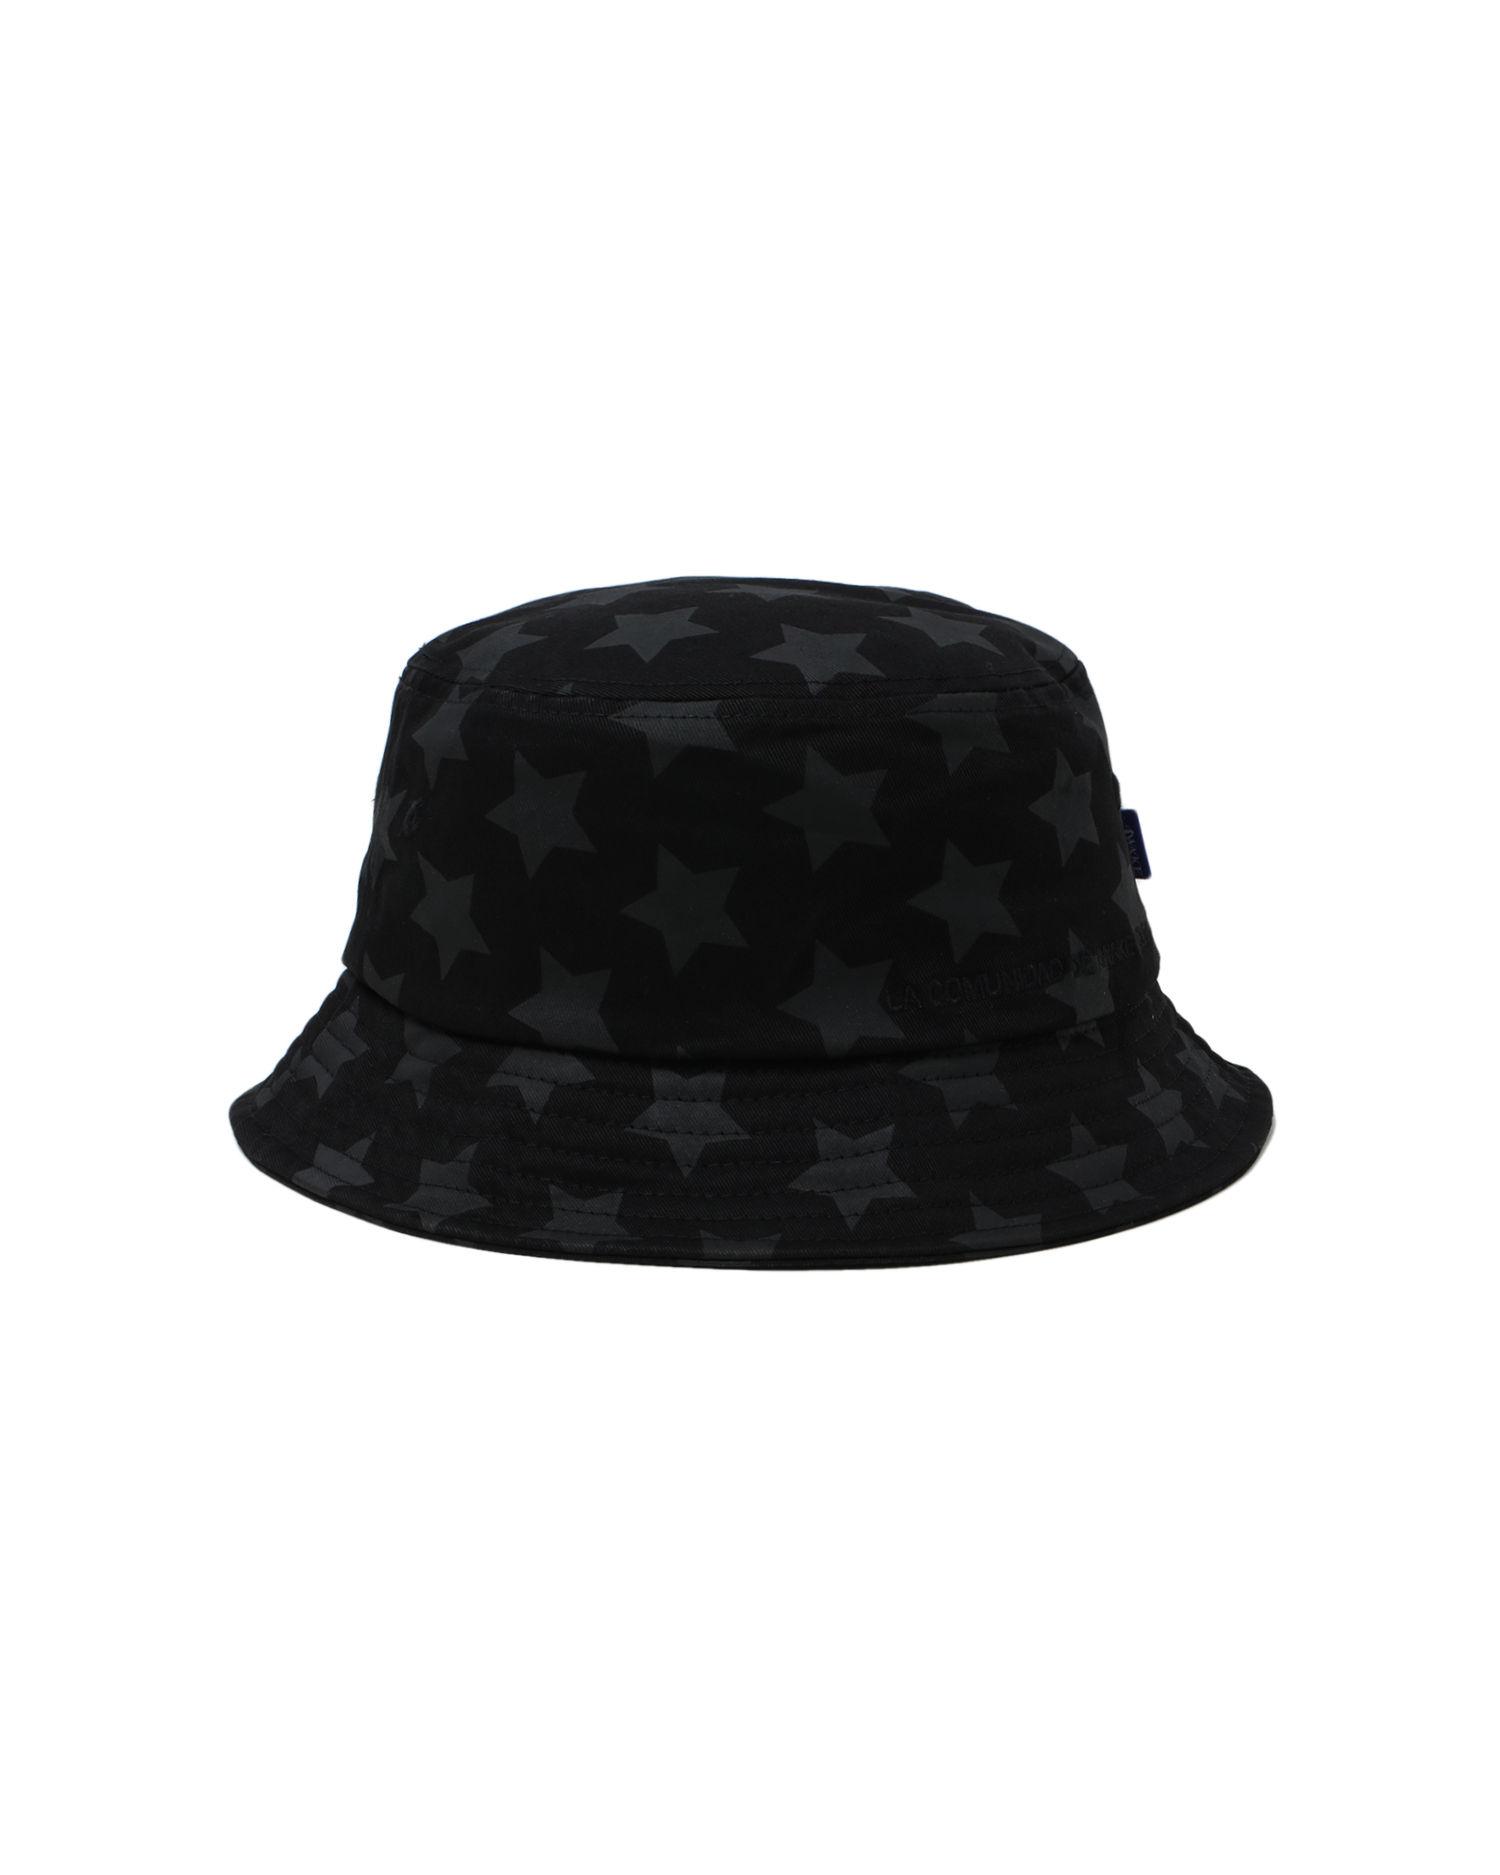 Star bucket hat by AWAKE NY